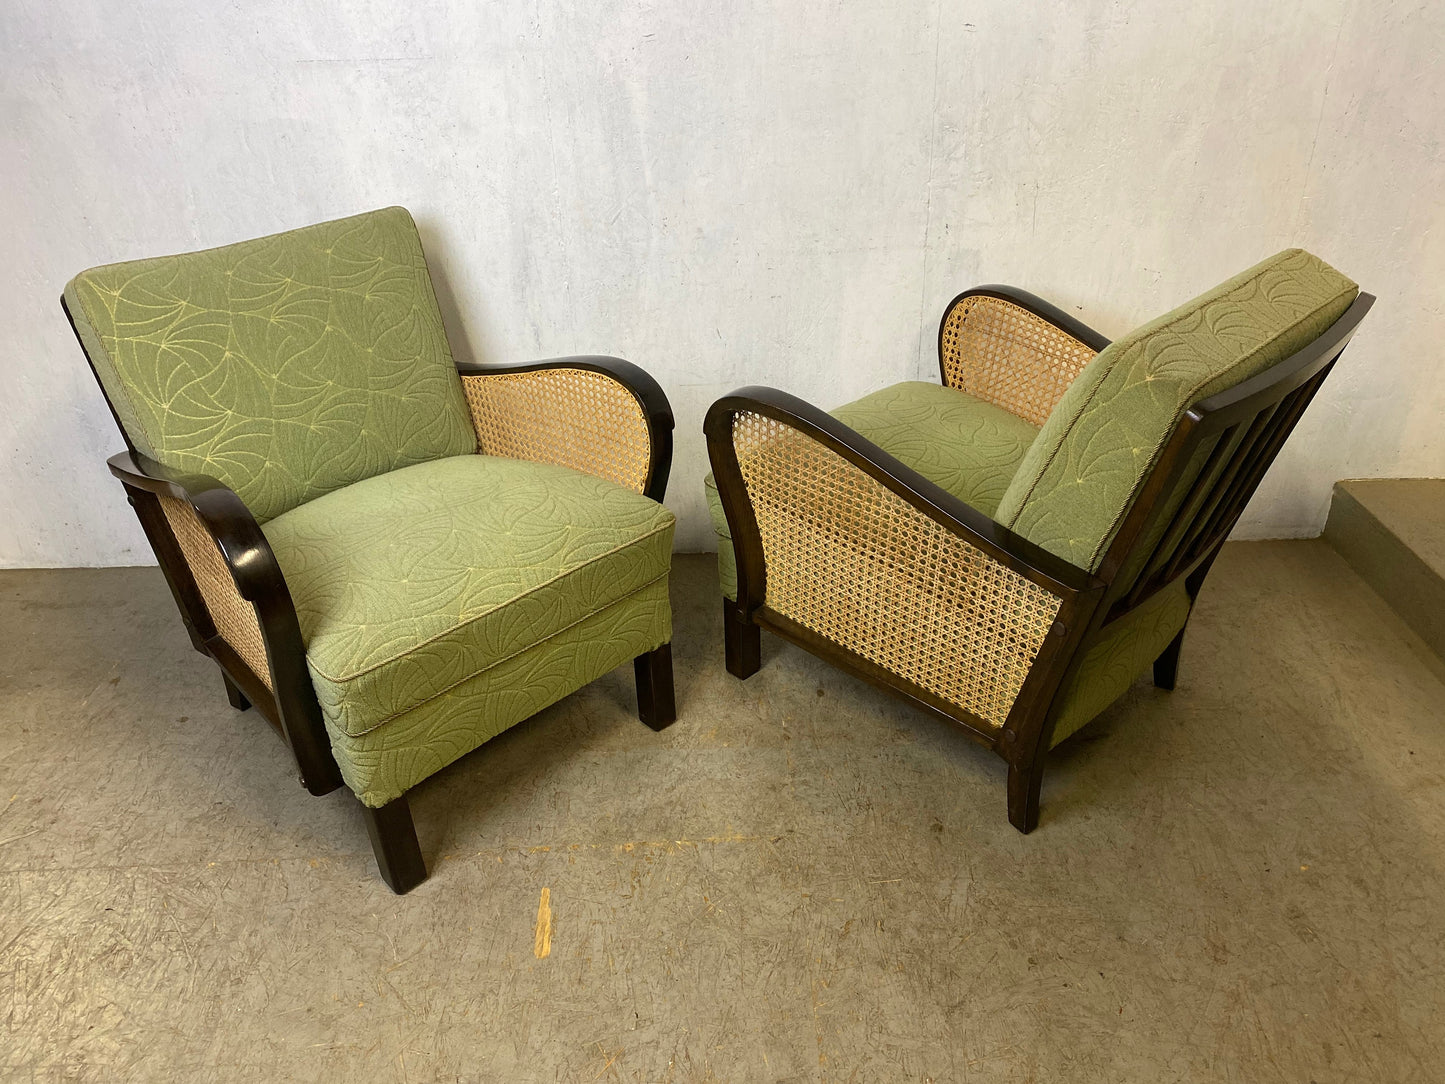 Zwei wunderschöne 50er Jahre Sessel in absolutem top Zustand